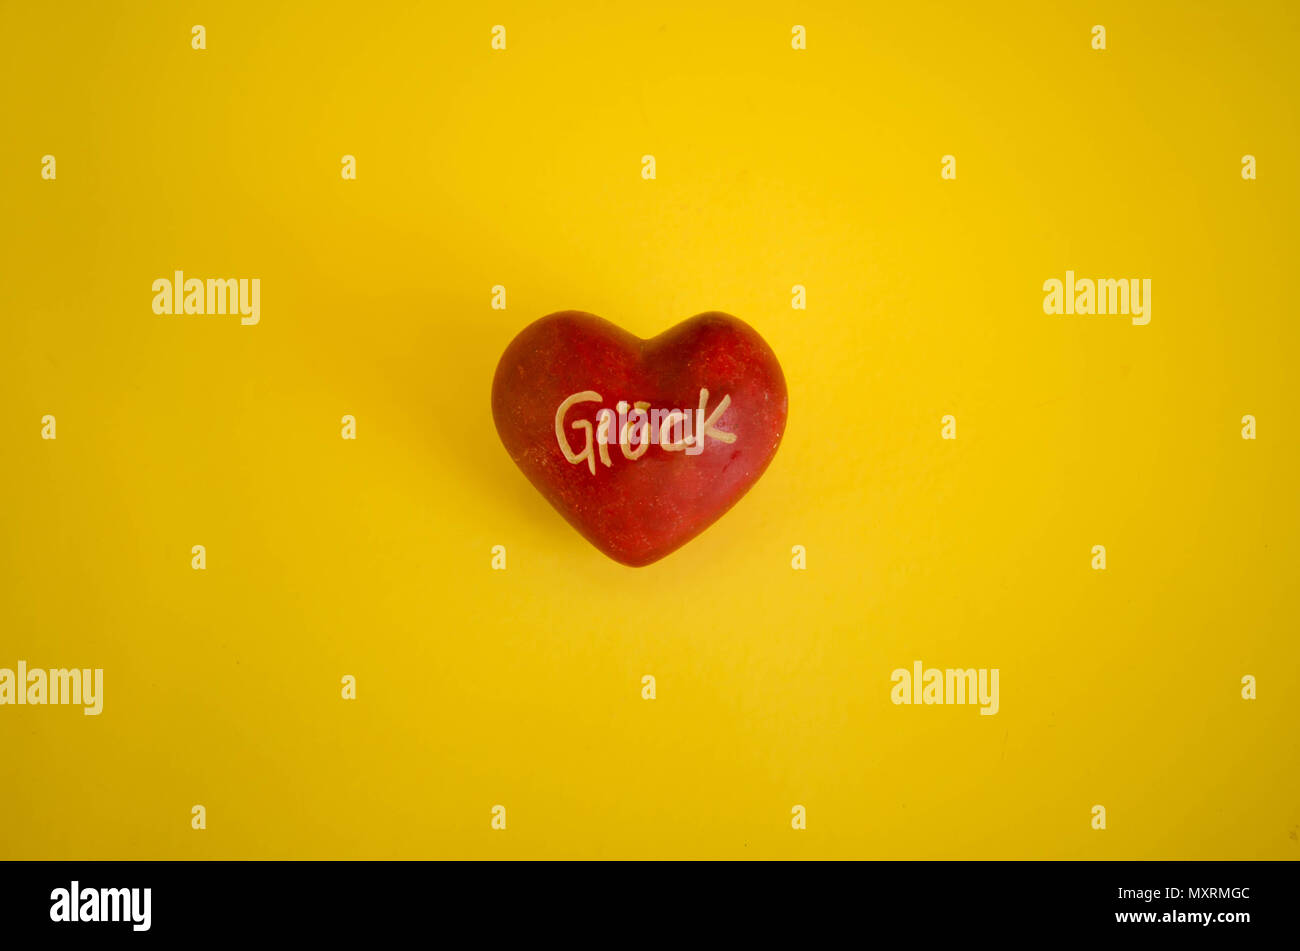 Dipinto di rosso pebble a forma di cuore su sfondo giallo. "Gluck' in tedesco, fortuna tradotto in inglese è il messaggio scritto su di esso. Foto Stock